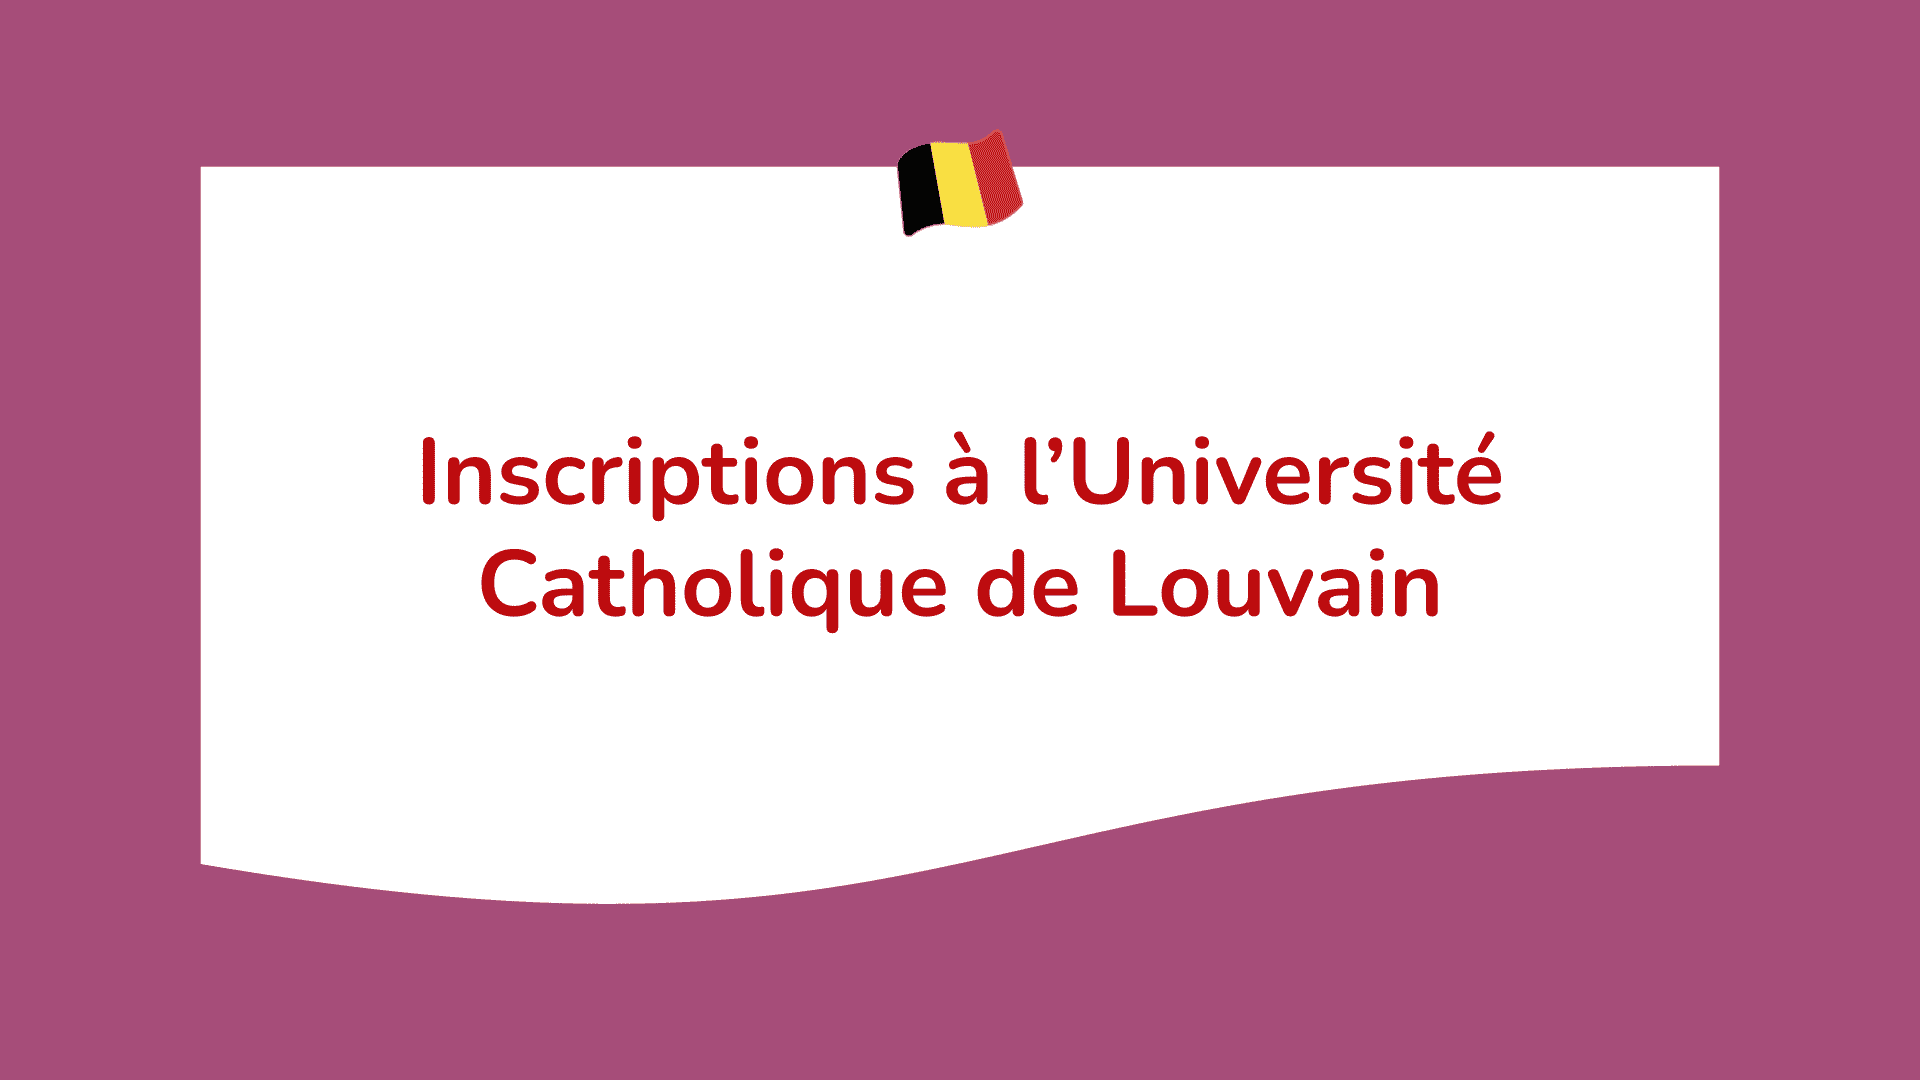 Inscriptions à l’Université Catholique de Louvain